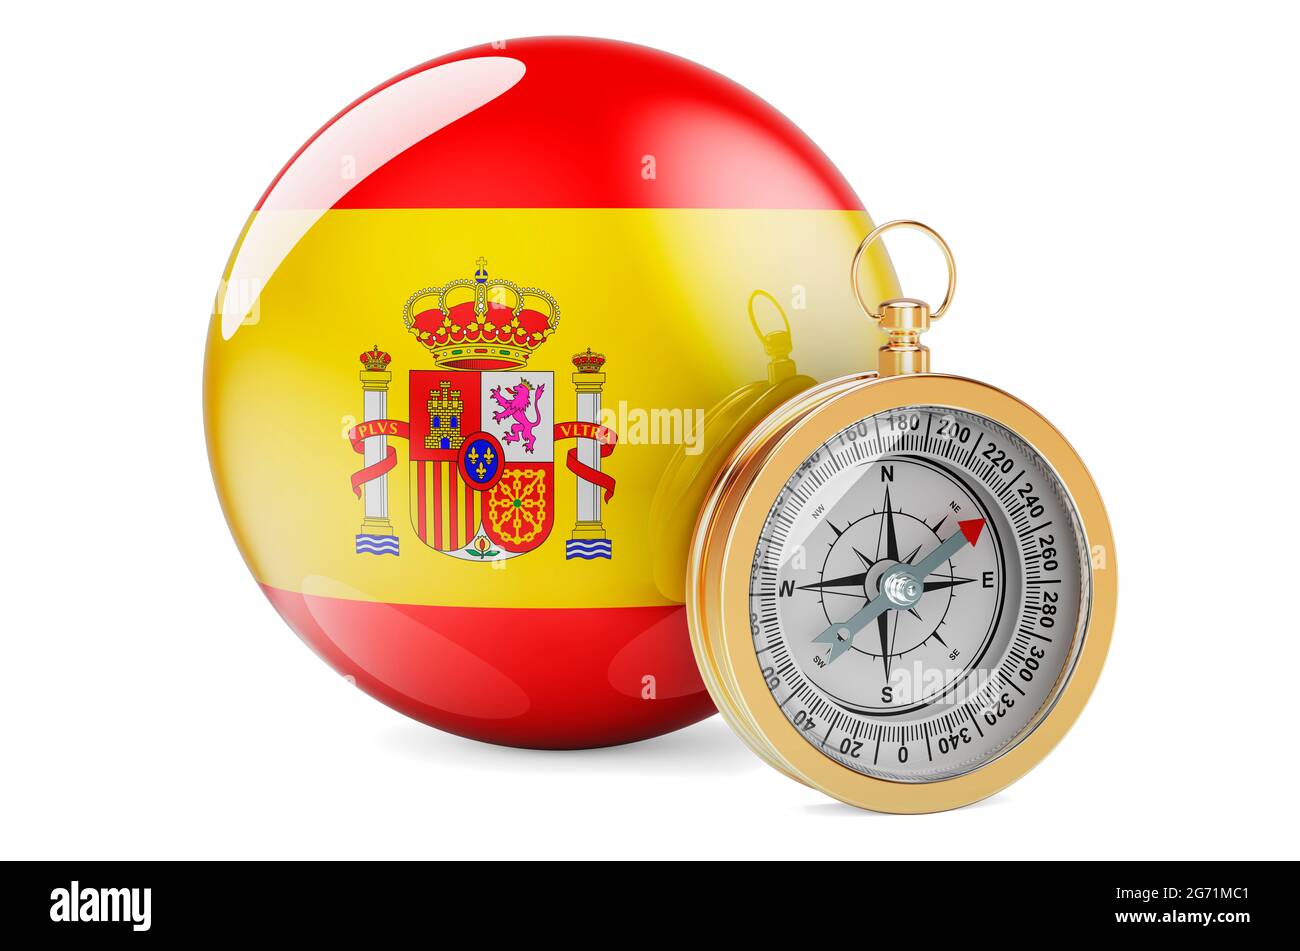 La bàn cờ Tây Ban Nha là biểu tượng tinh thần của người Tây Ban Nha. Hãy xem hình ảnh để tìm hiểu về ý nghĩa của biểu tượng này và đất nước xinh đẹp Tây Ban Nha.